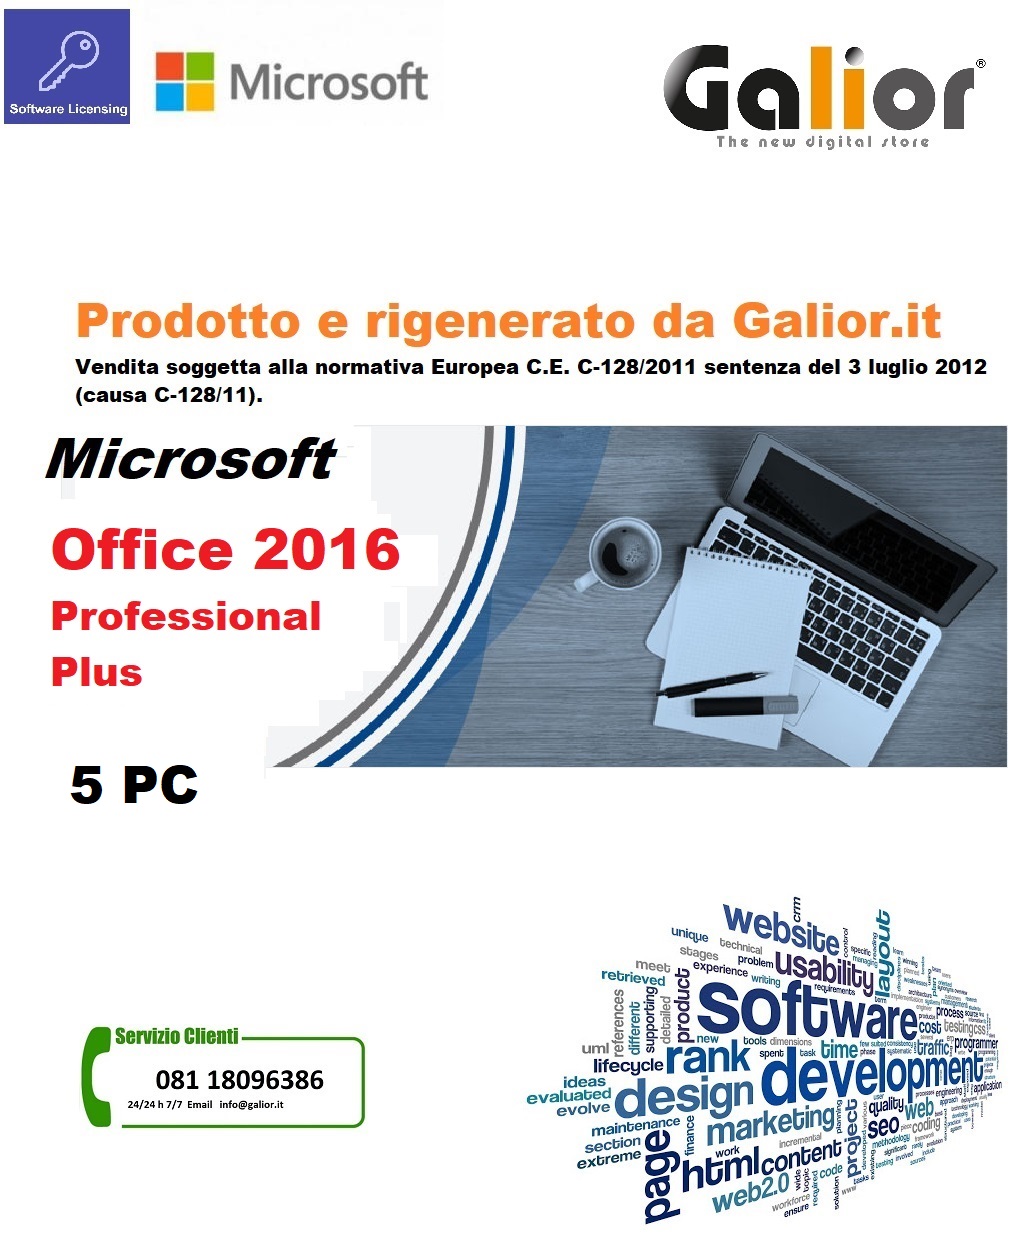 Licenza Office 365 ProPlus con Università - Microsoft Community